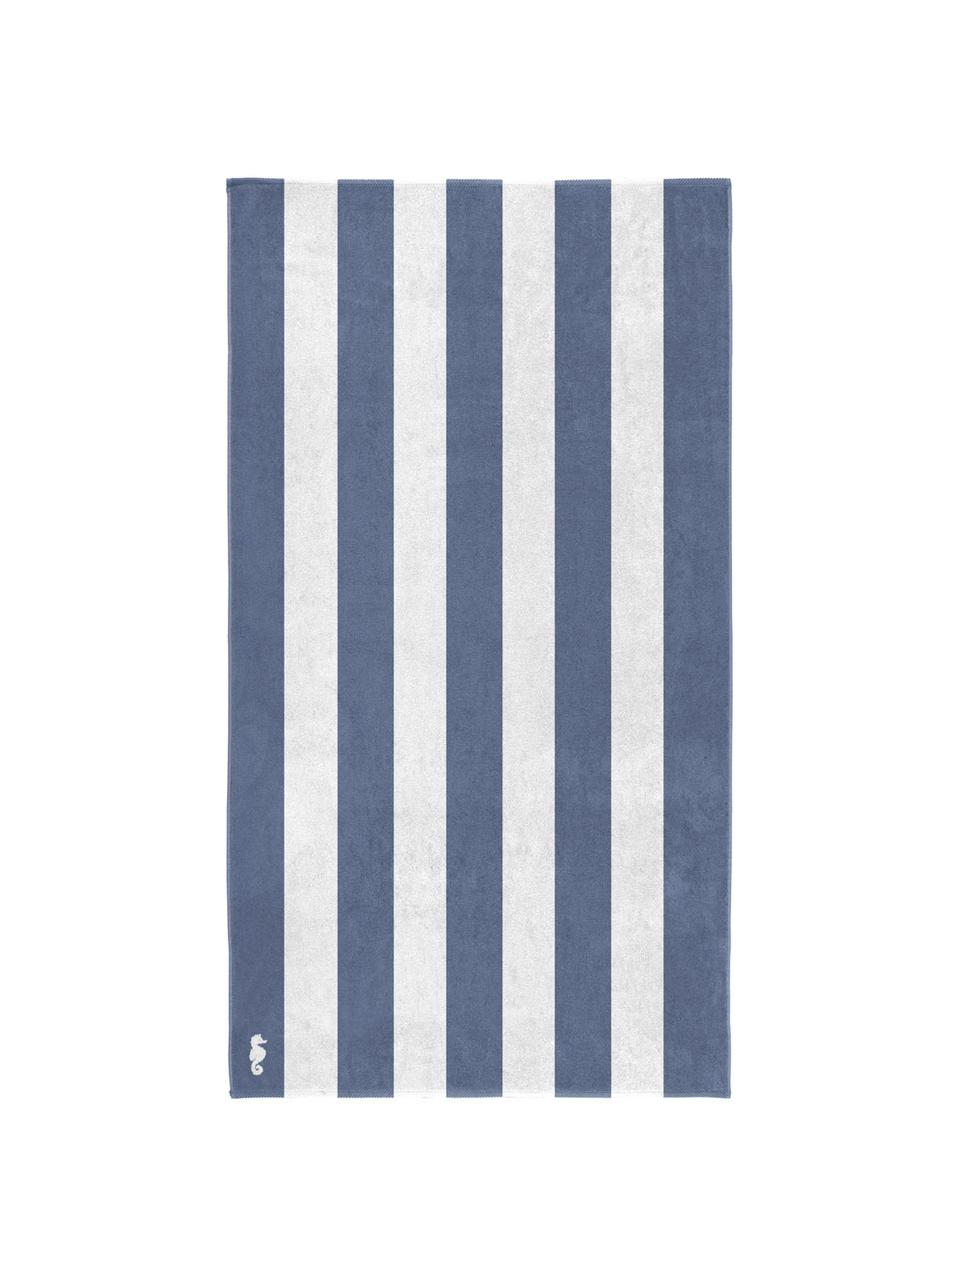 Ręcznik plażowy Vamos, Egipska bawełna, średnia gramatura 420 g/m, Niebieski, biały, S 100 x D 180 cm